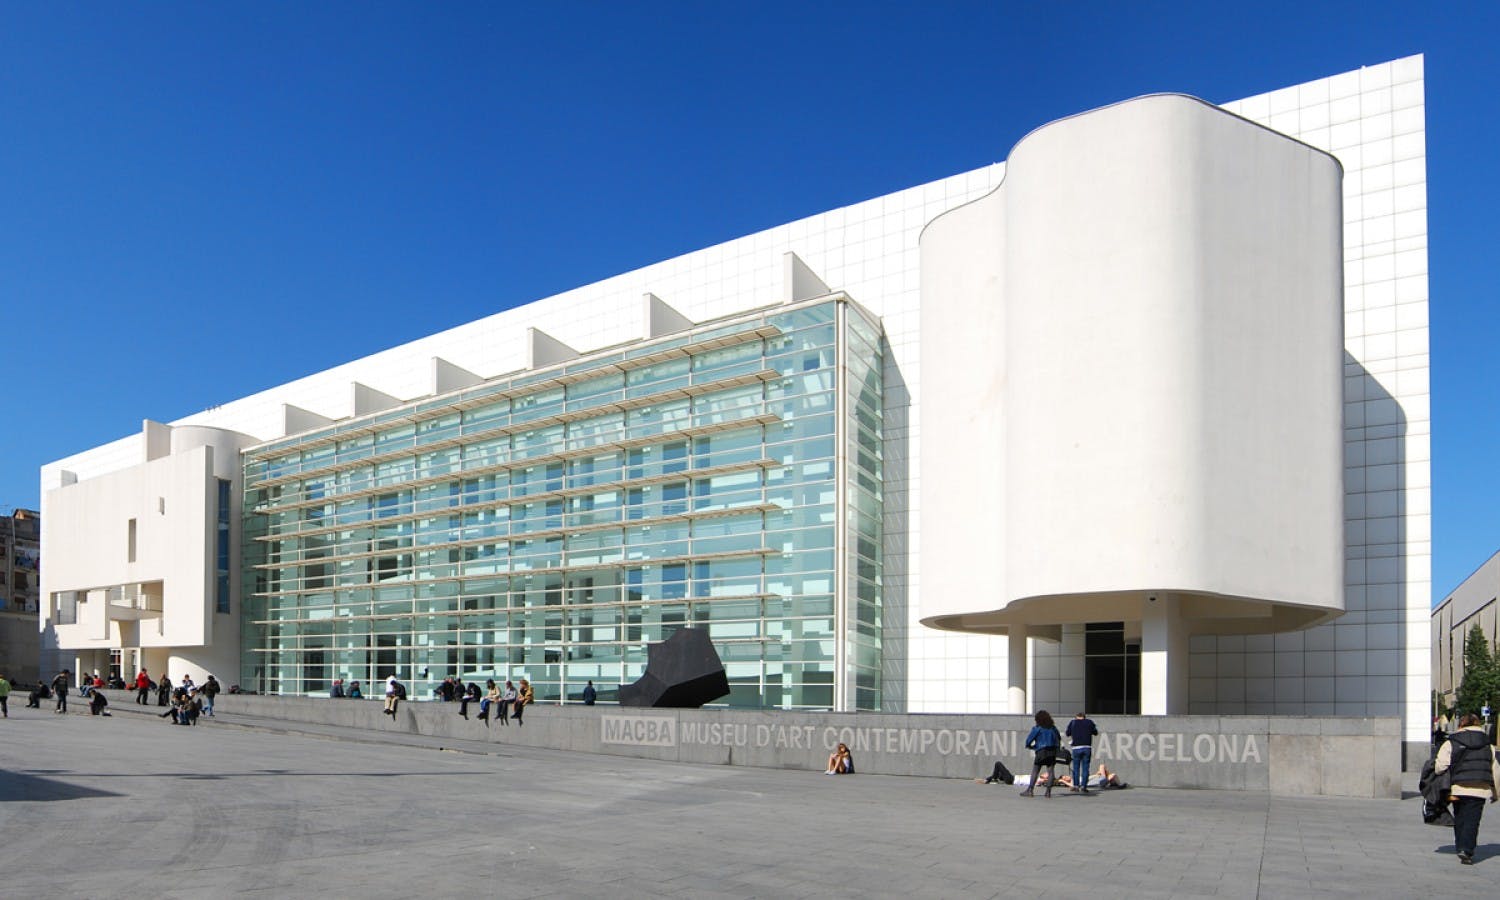 Museum van Barcelona van Hedendaagse Kunst (MACBA)